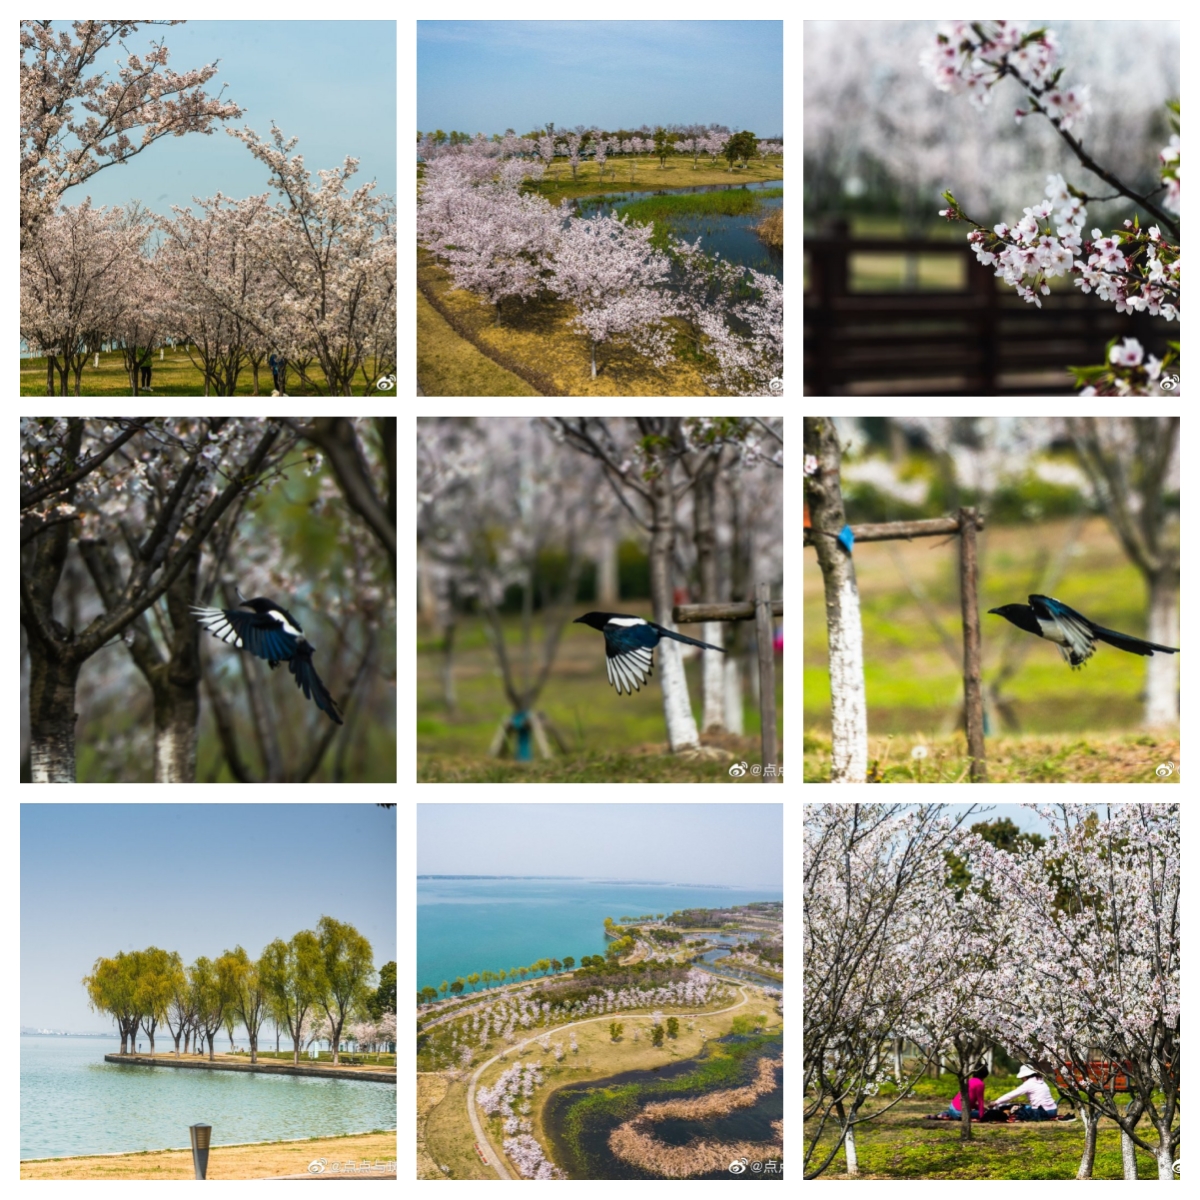 仙樱湖公园的樱花是完全不同于上方山的画风的，像淡淡的水墨画。就是等我骑车骑到阳澄湖半岛已经没体力了#阳澄湖半岛#